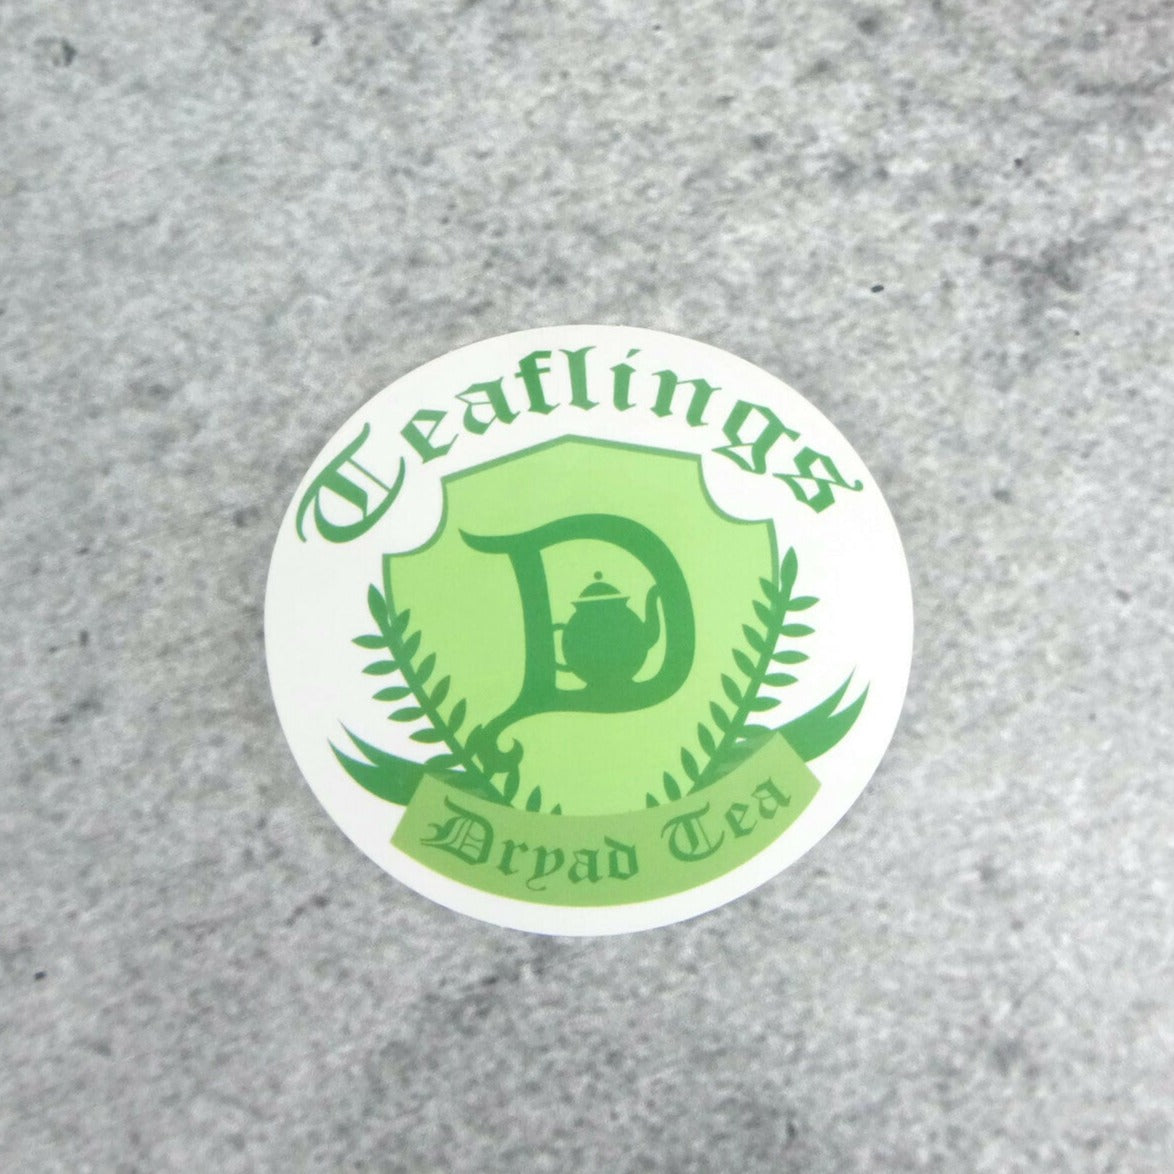 Teafling Crest Sticker